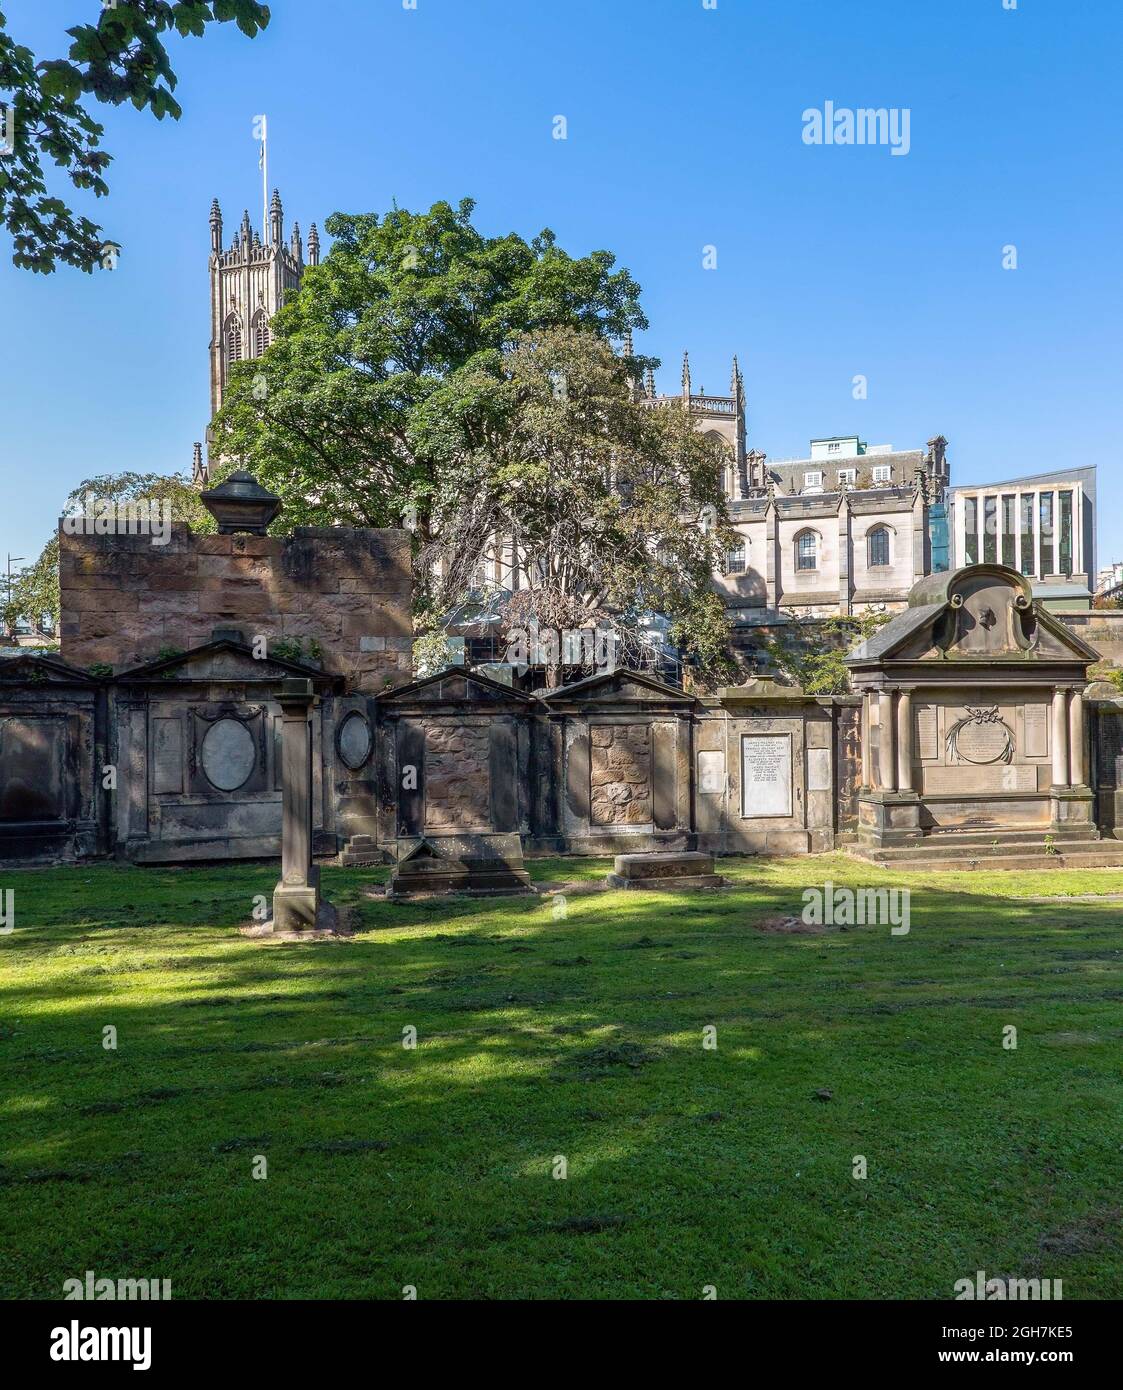 Eglise St John's du cimetière St Cuthbert dans le centre d'Edimbourg, Ecosse, Royaume-Uni Banque D'Images